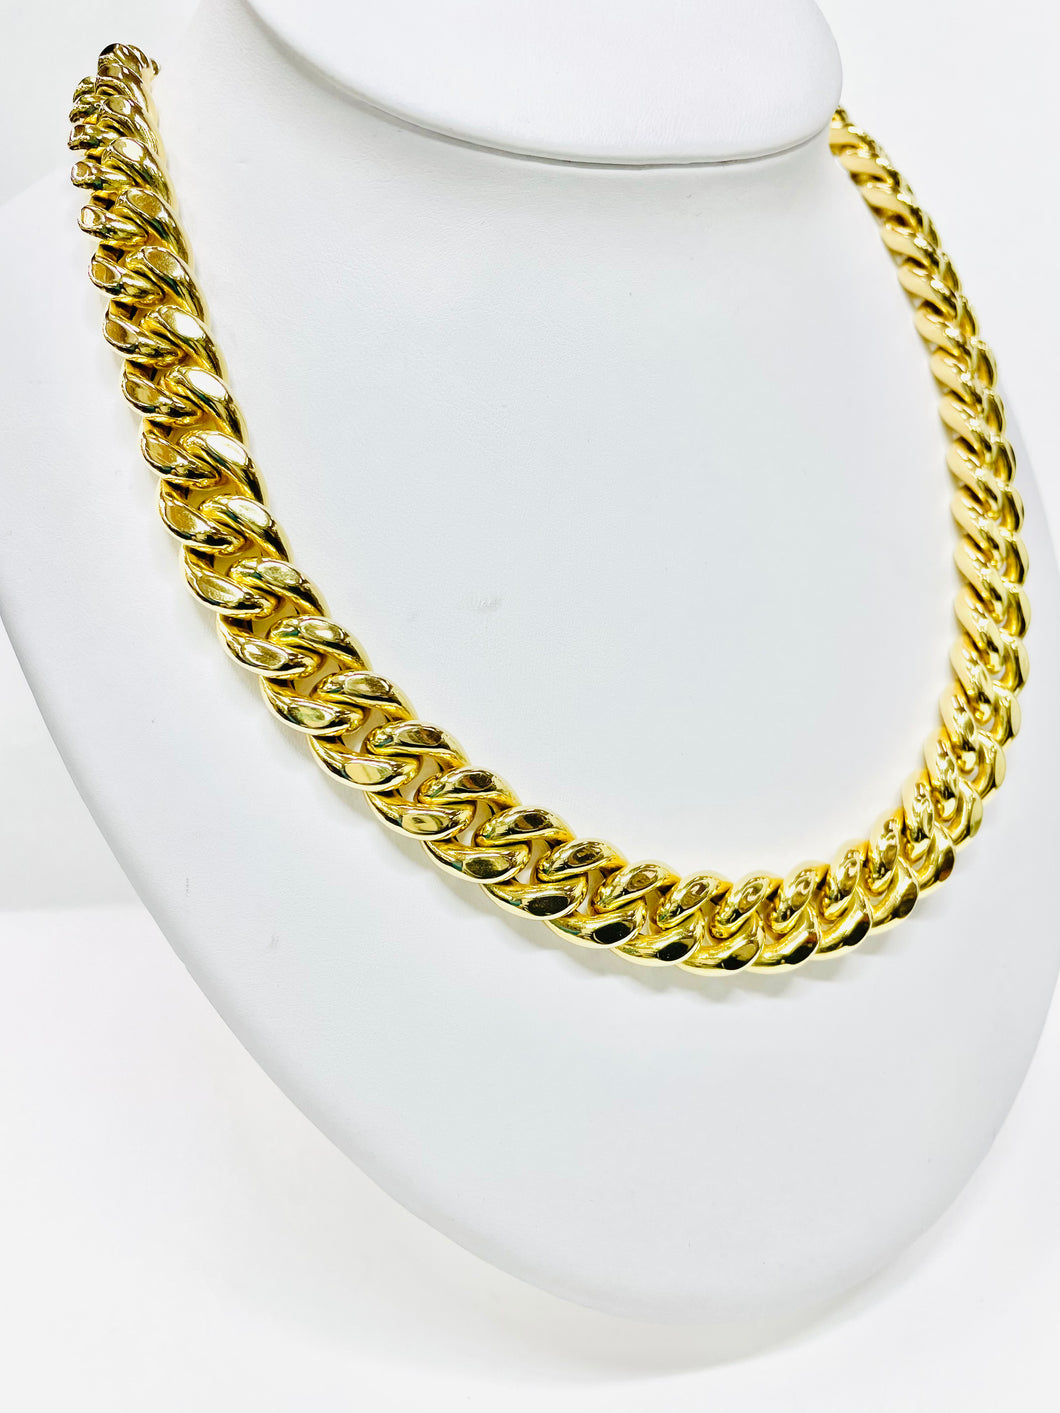 Miami cuban link chain 11 mm 10 karat gold Semi-hollow